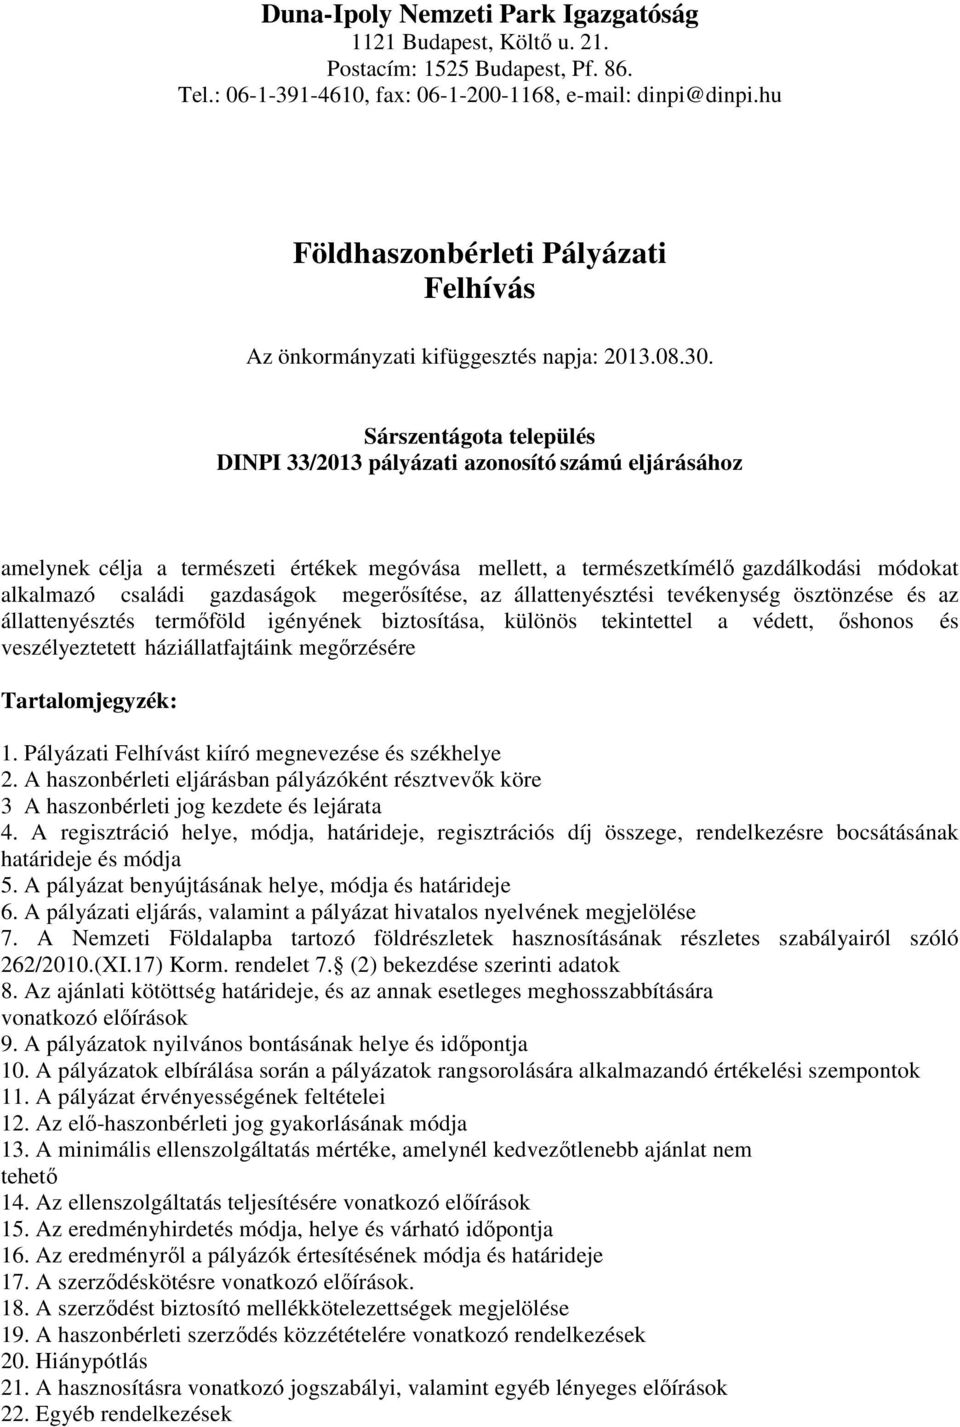 Sárszentágota település DINPI 33/2013 pályázati azonosító számú eljárásához amelynek célja a természeti értékek megóvása mellett, a természetkímélő gazdálkodási módokat alkalmazó családi gazdaságok